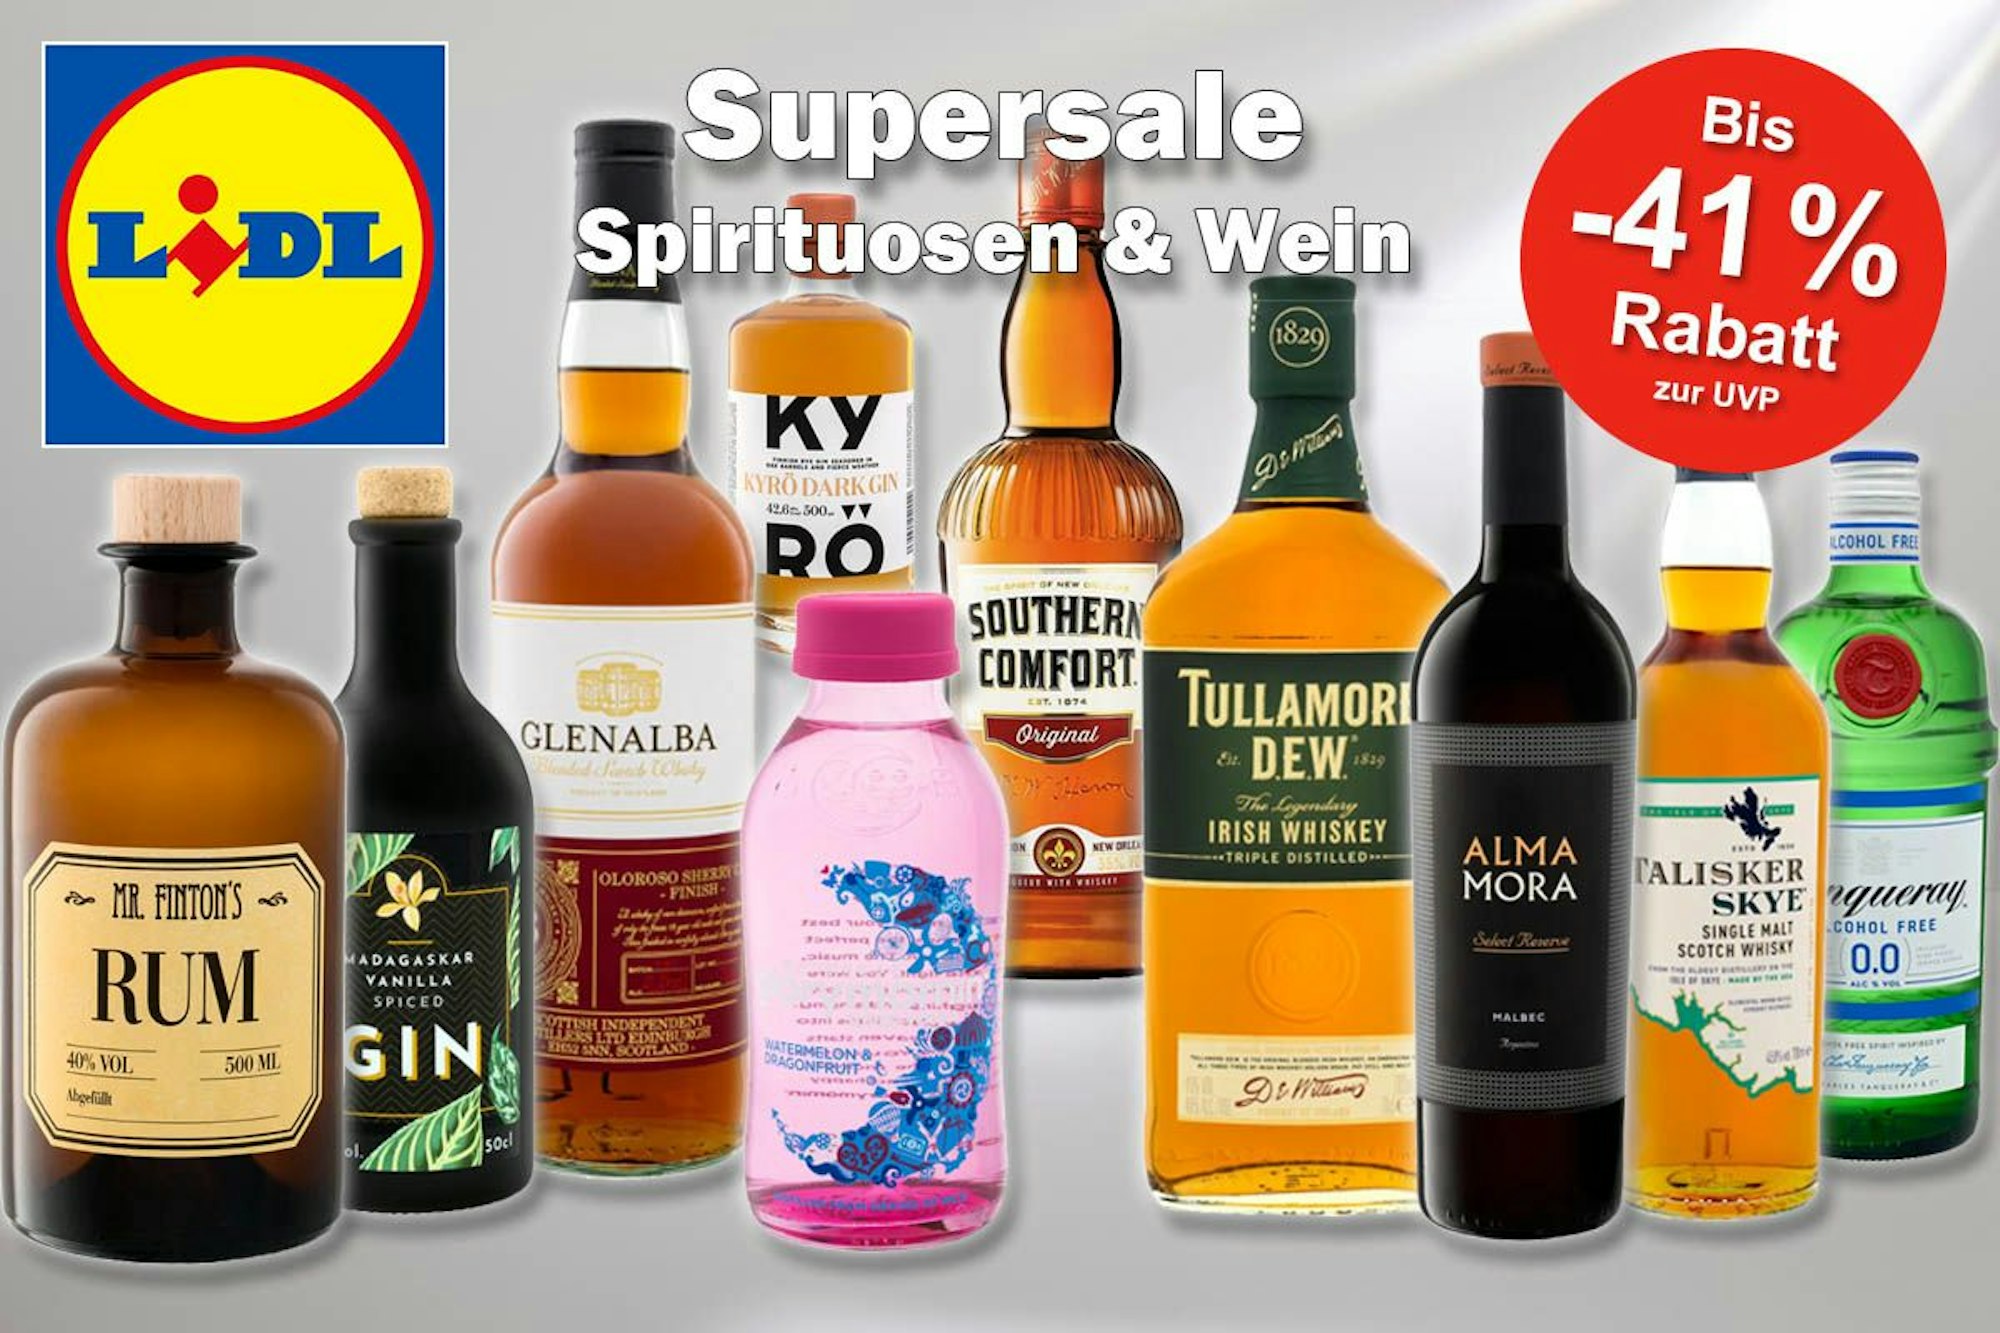 Mega Lidl Supersale auf Spirituosen und Wein: Jetzt bis zu 41% auf Whisky,  Gin, Rum, Rotwein und Co. sparen | Express